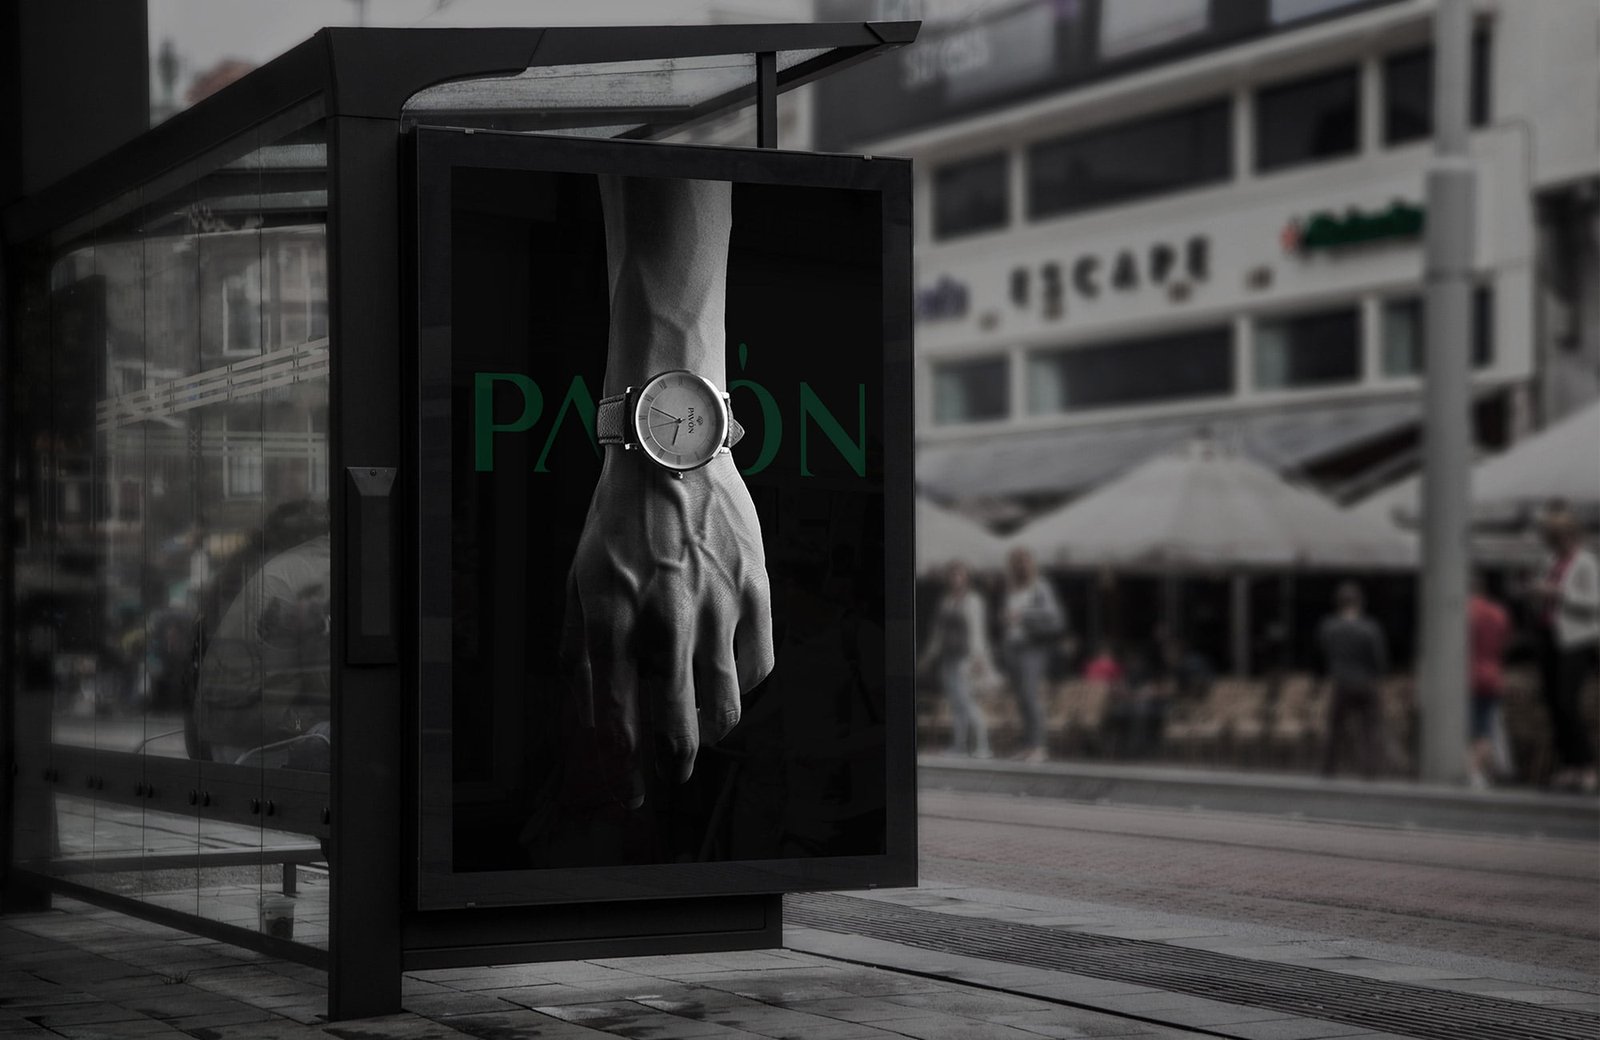 Pavon Watches poster ad design